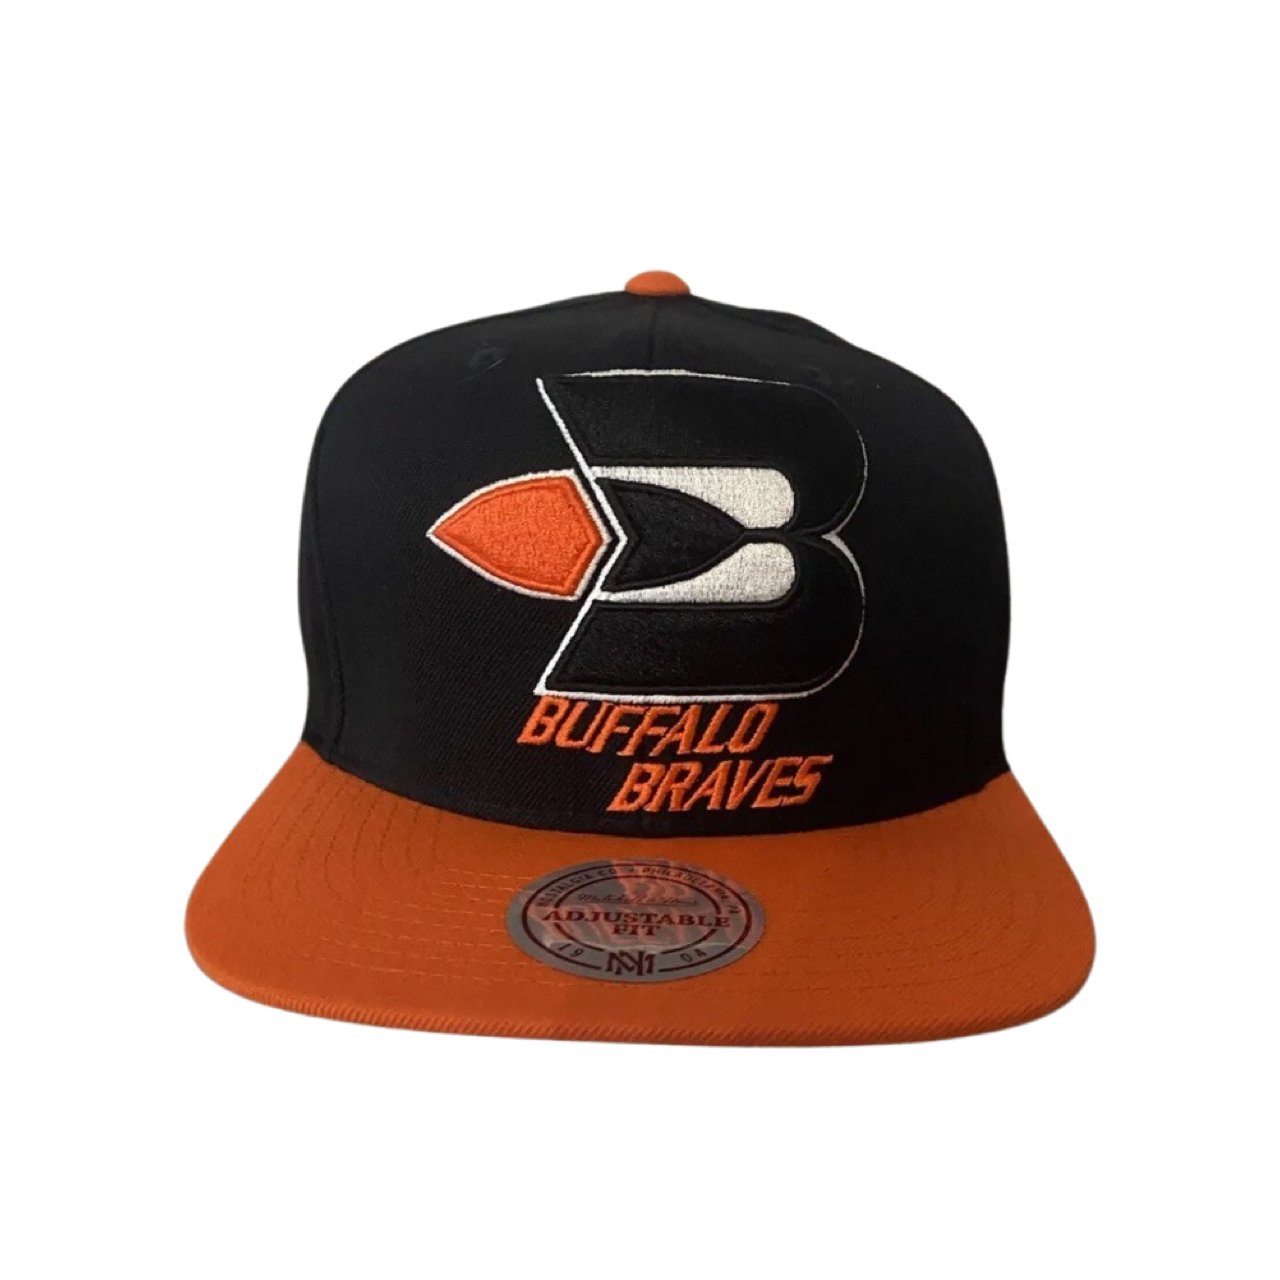 Buffalo Braves NBA Mitchell & Ness Basketball Snapback Cap with Flat Brim - Soul and Sense Streetwear